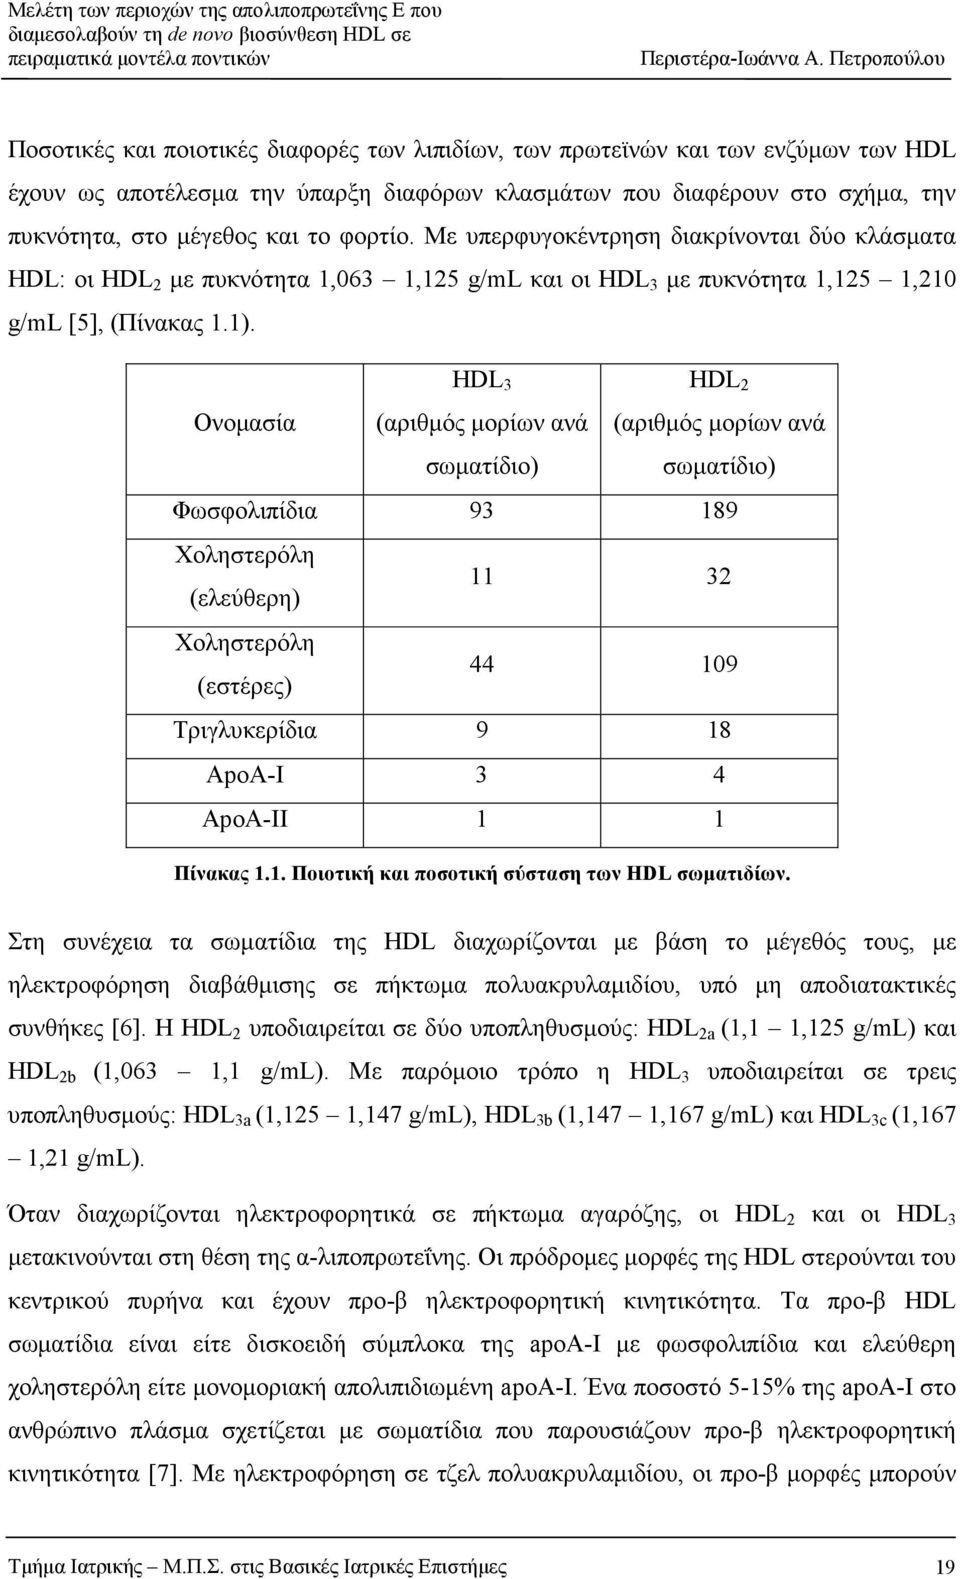 Ονοµασία HDL 3 (αριθµός µορίων ανά σωµατίδιο) HDL 2 (αριθµός µορίων ανά σωµατίδιο) Φωσφολιπίδια 93 189 Χοληστερόλη (ελεύθερη) 11 32 Χοληστερόλη (εστέρες) 44 109 Τριγλυκερίδια 9 18 ApoA-I 3 4 ApoA-IΙ